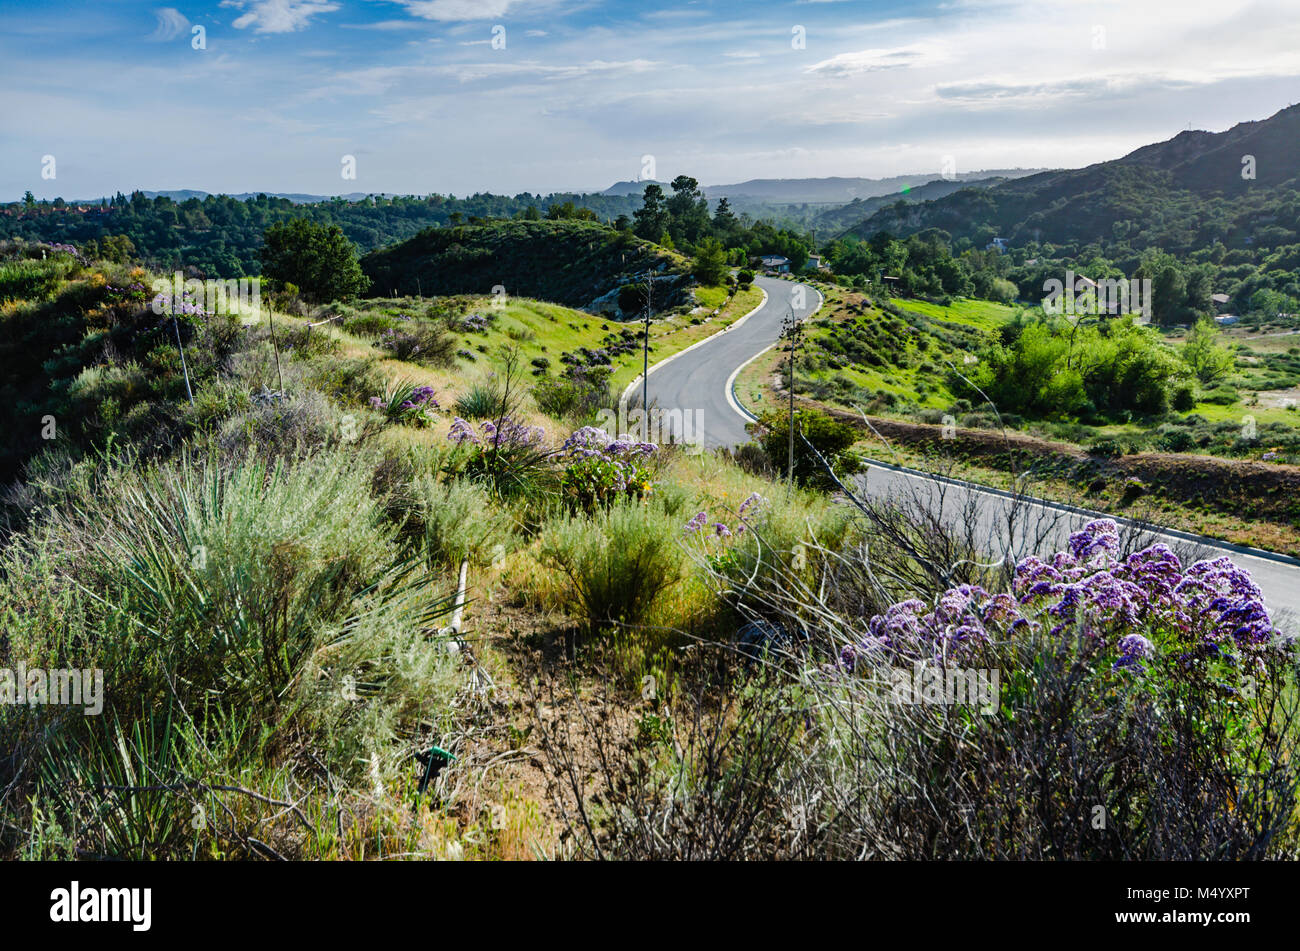 Route asphaltée sinueuse au milieu de fleurs de printemps sur les vertes collines, montagnes et canyons, à Orange County, en Californie. Banque D'Images